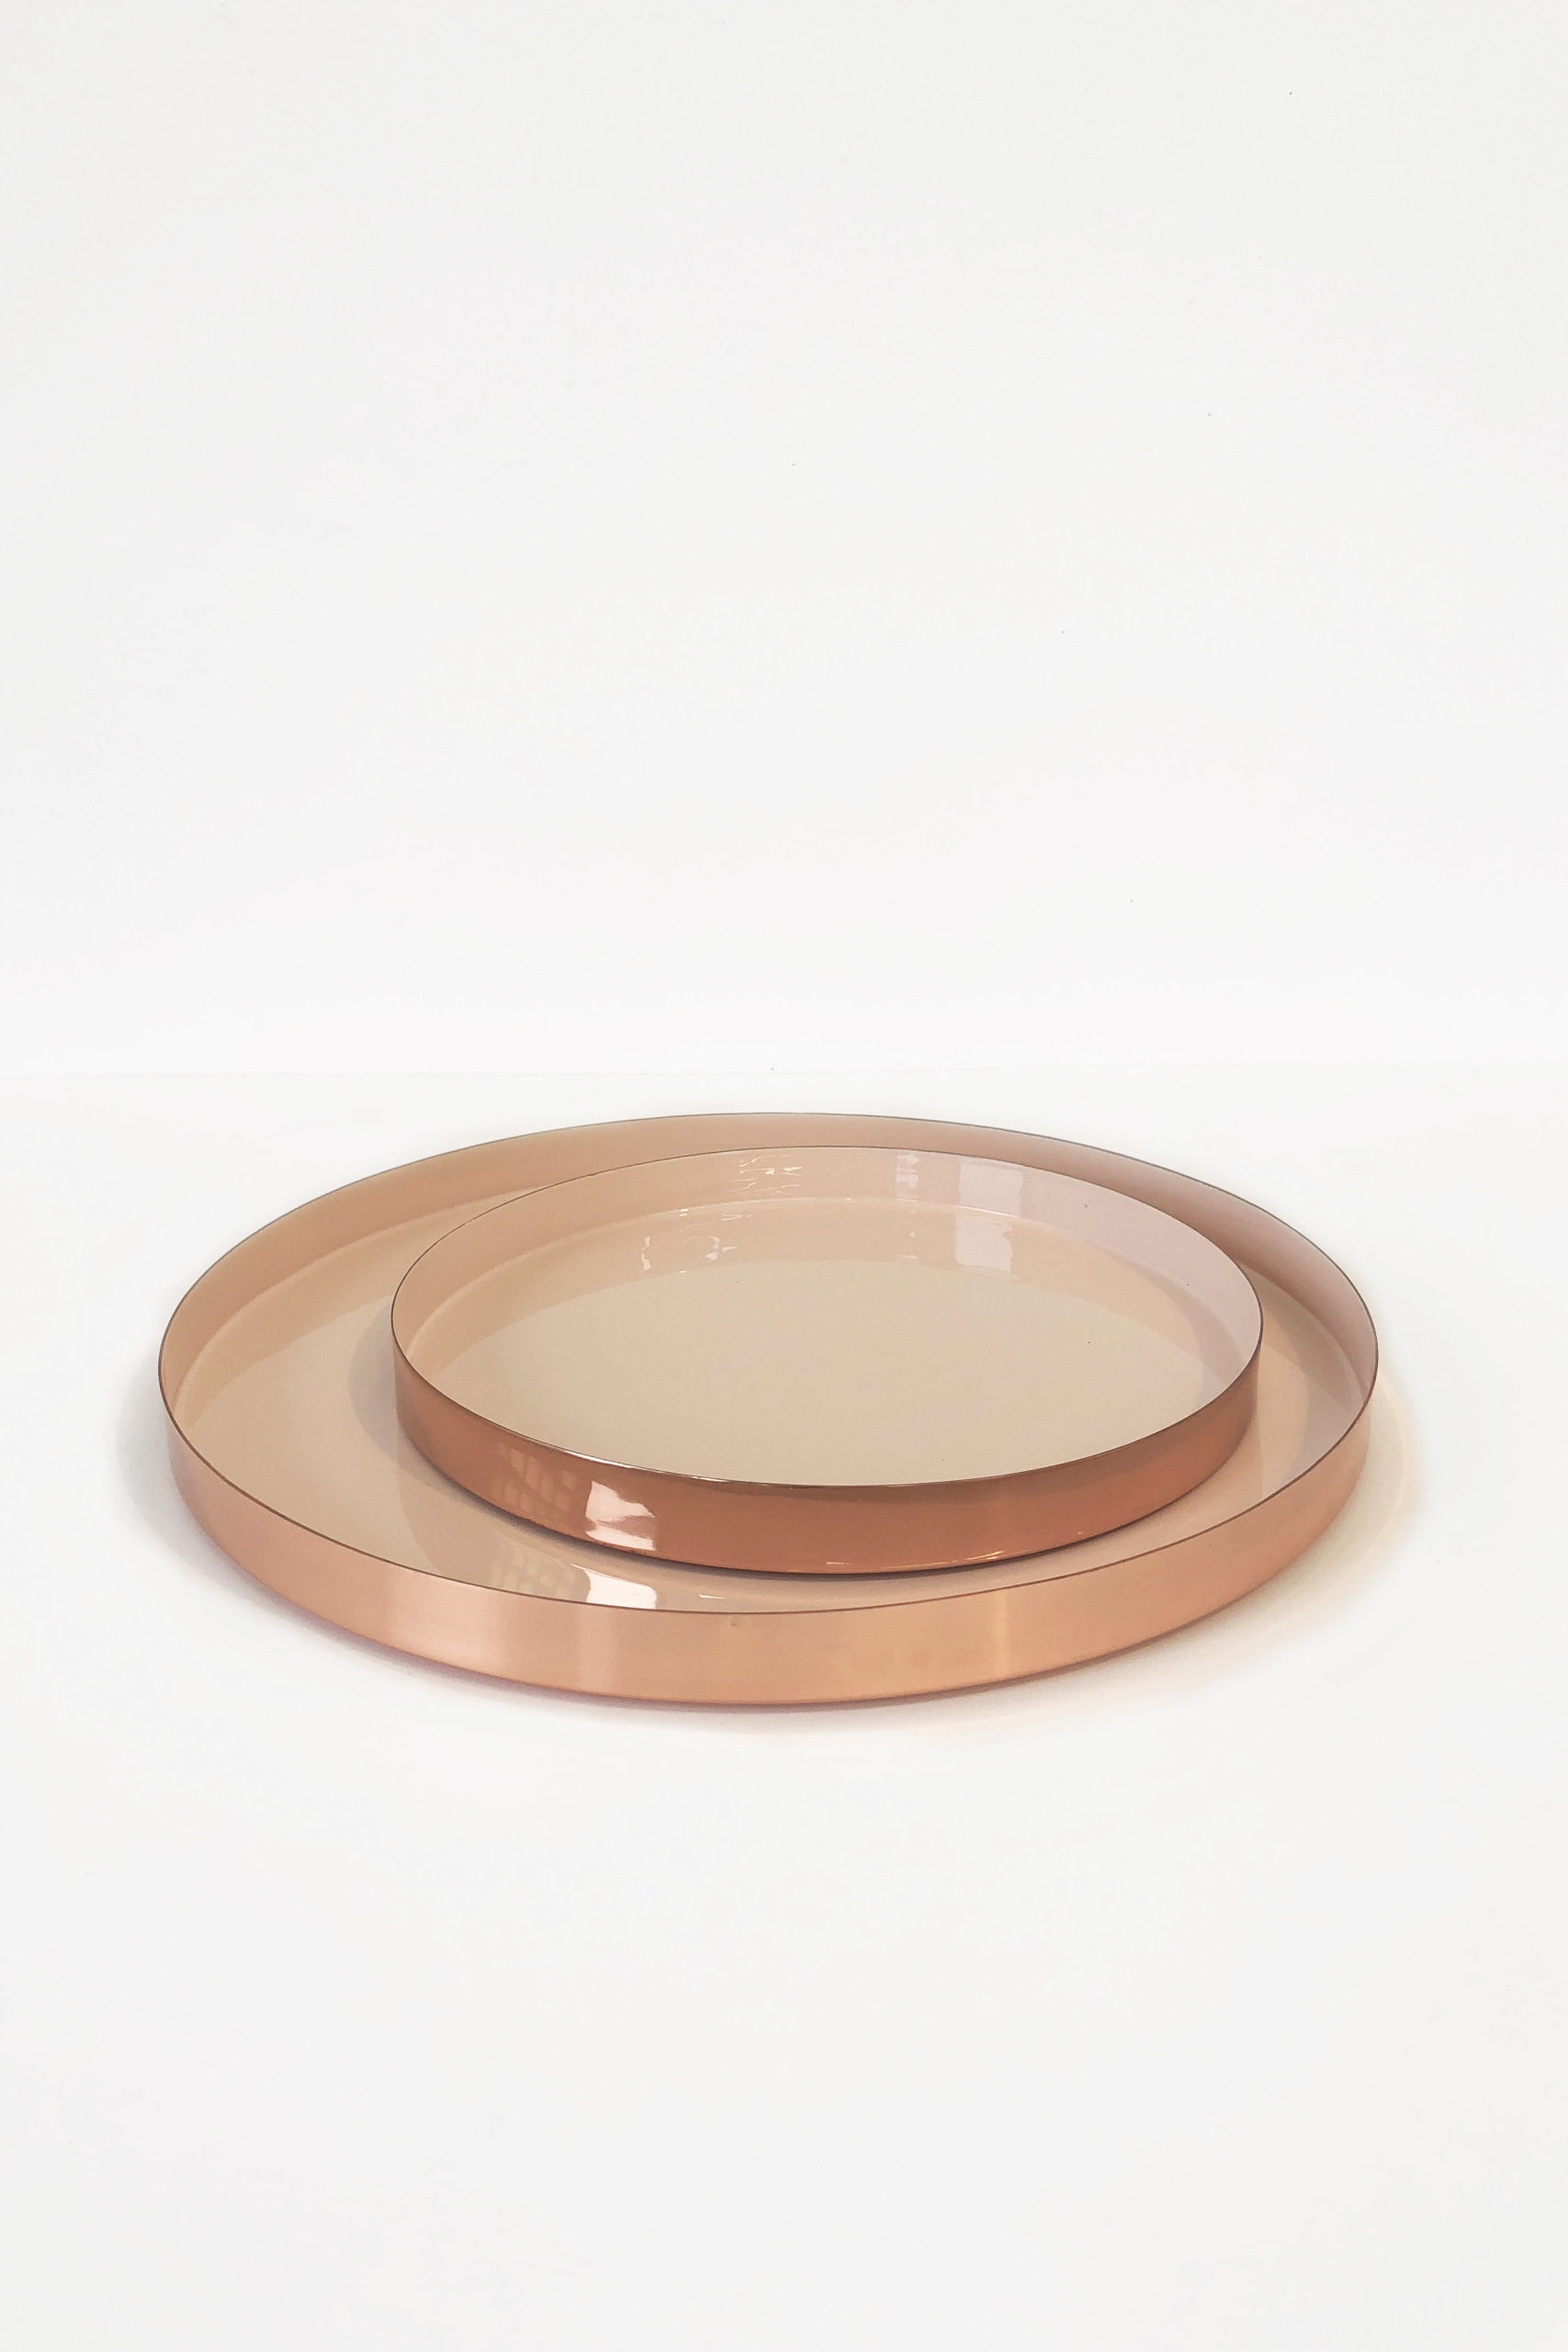 Hawkins NY Copper Plates/Trays X158